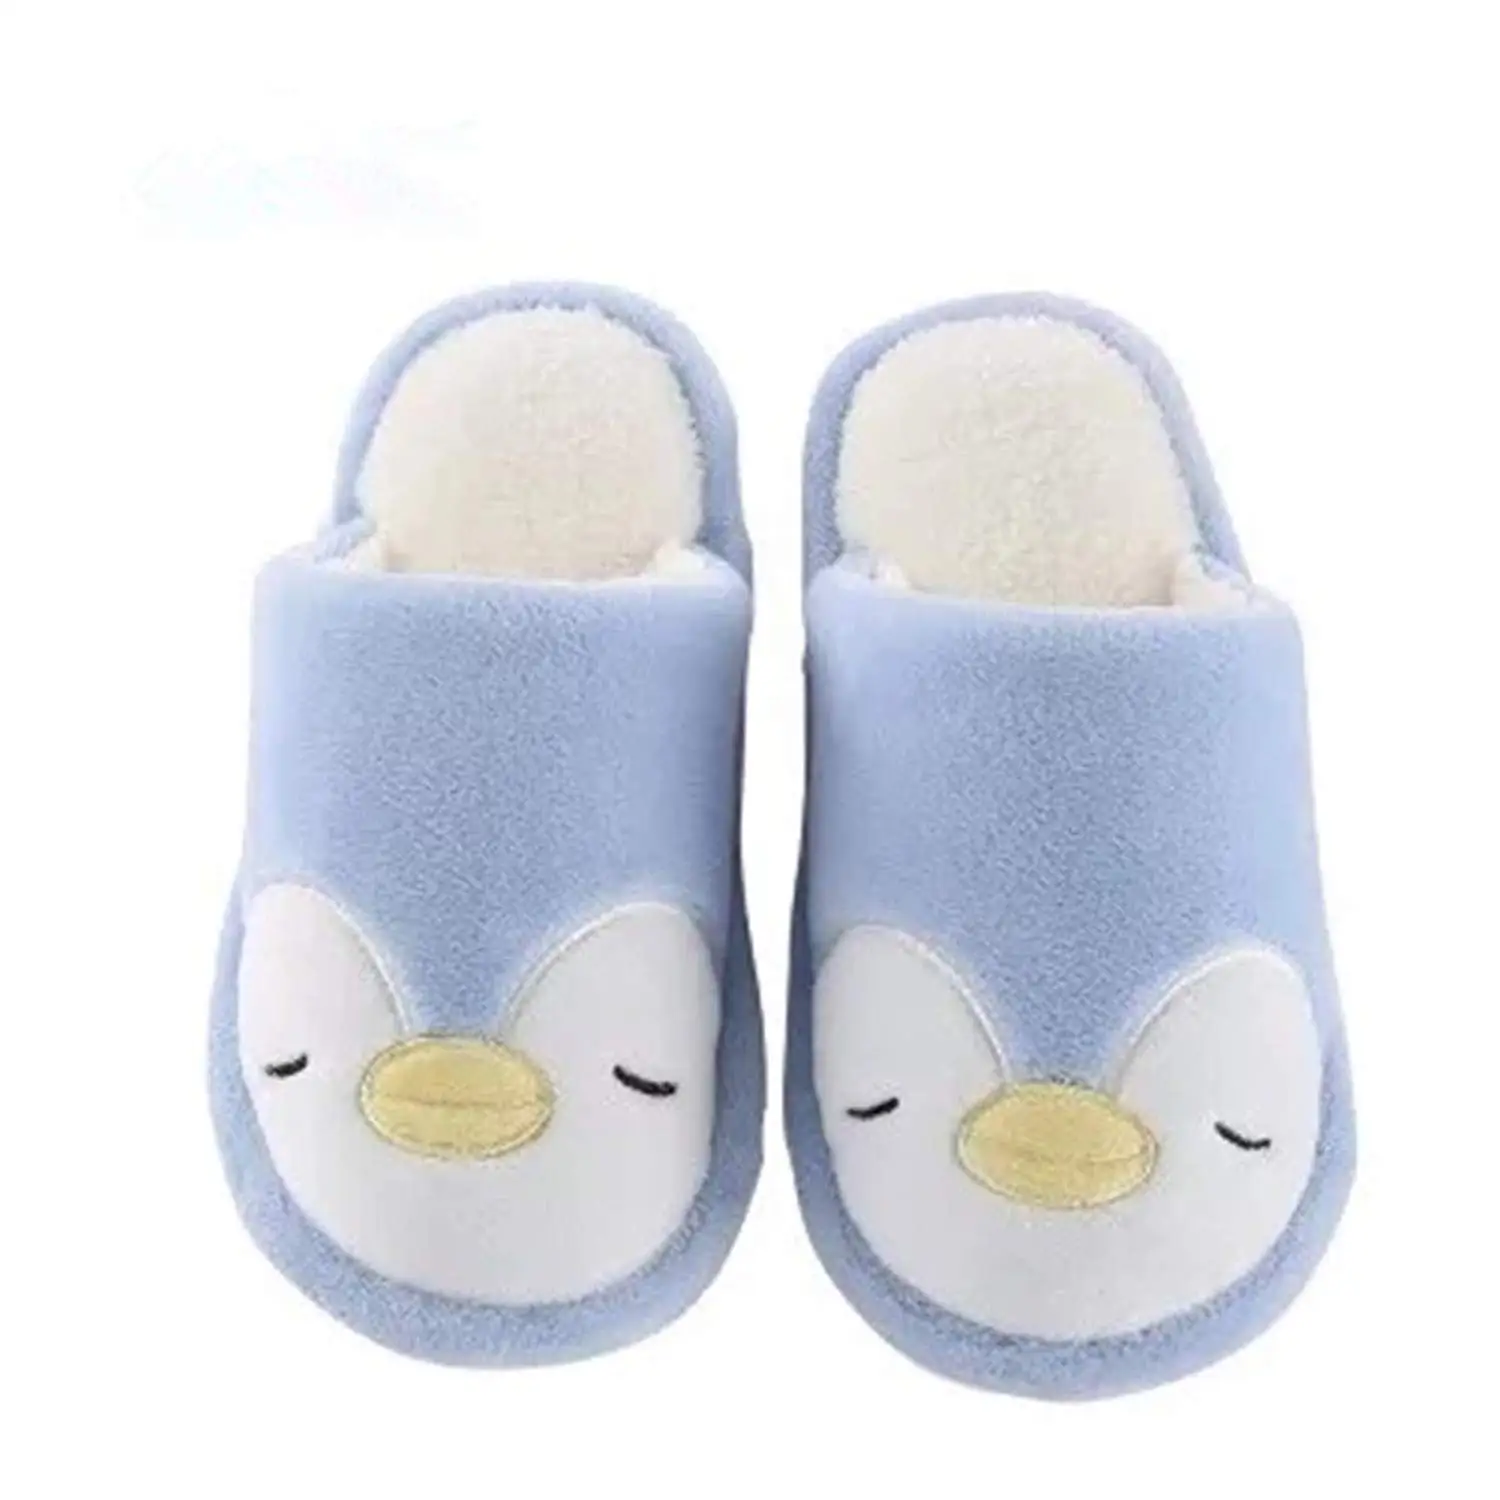 Buy Animal Cute Slippers Kids Indoor 